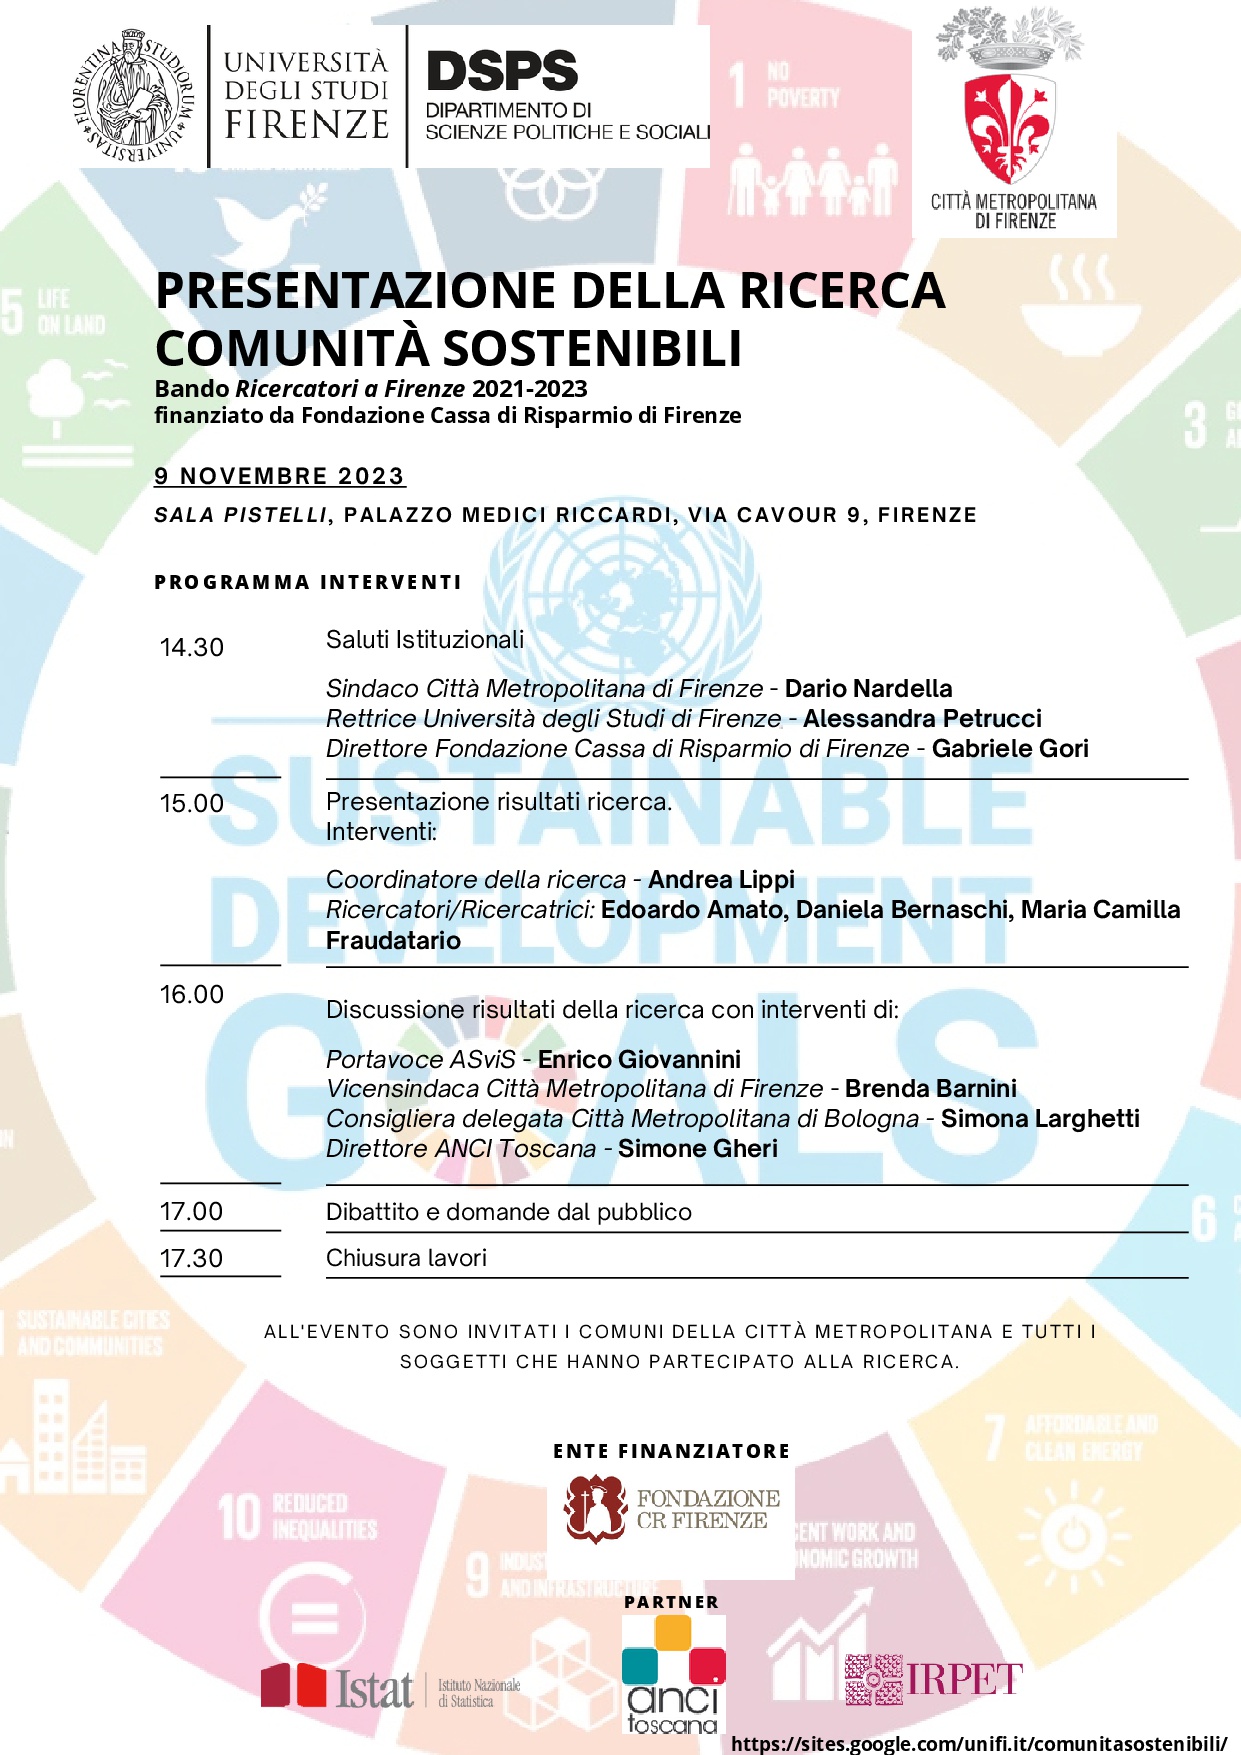 Programma Comunit Sostenibili: Capacit politico-amministrativa e policy coherence nello sviluppo sostenibile della Citt metropolitana di Firenze